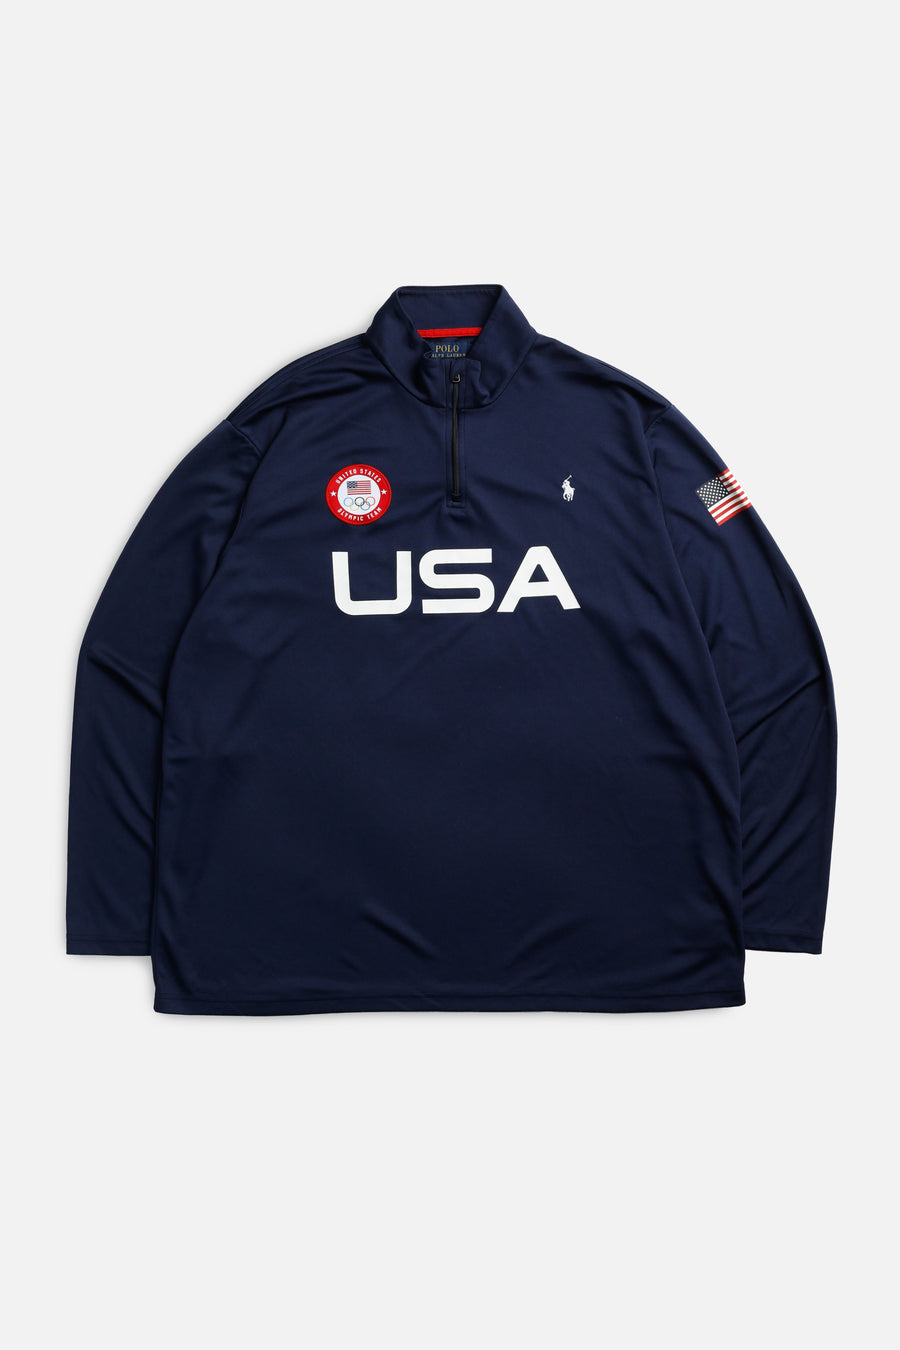 Olympics USA Sweater - XXL